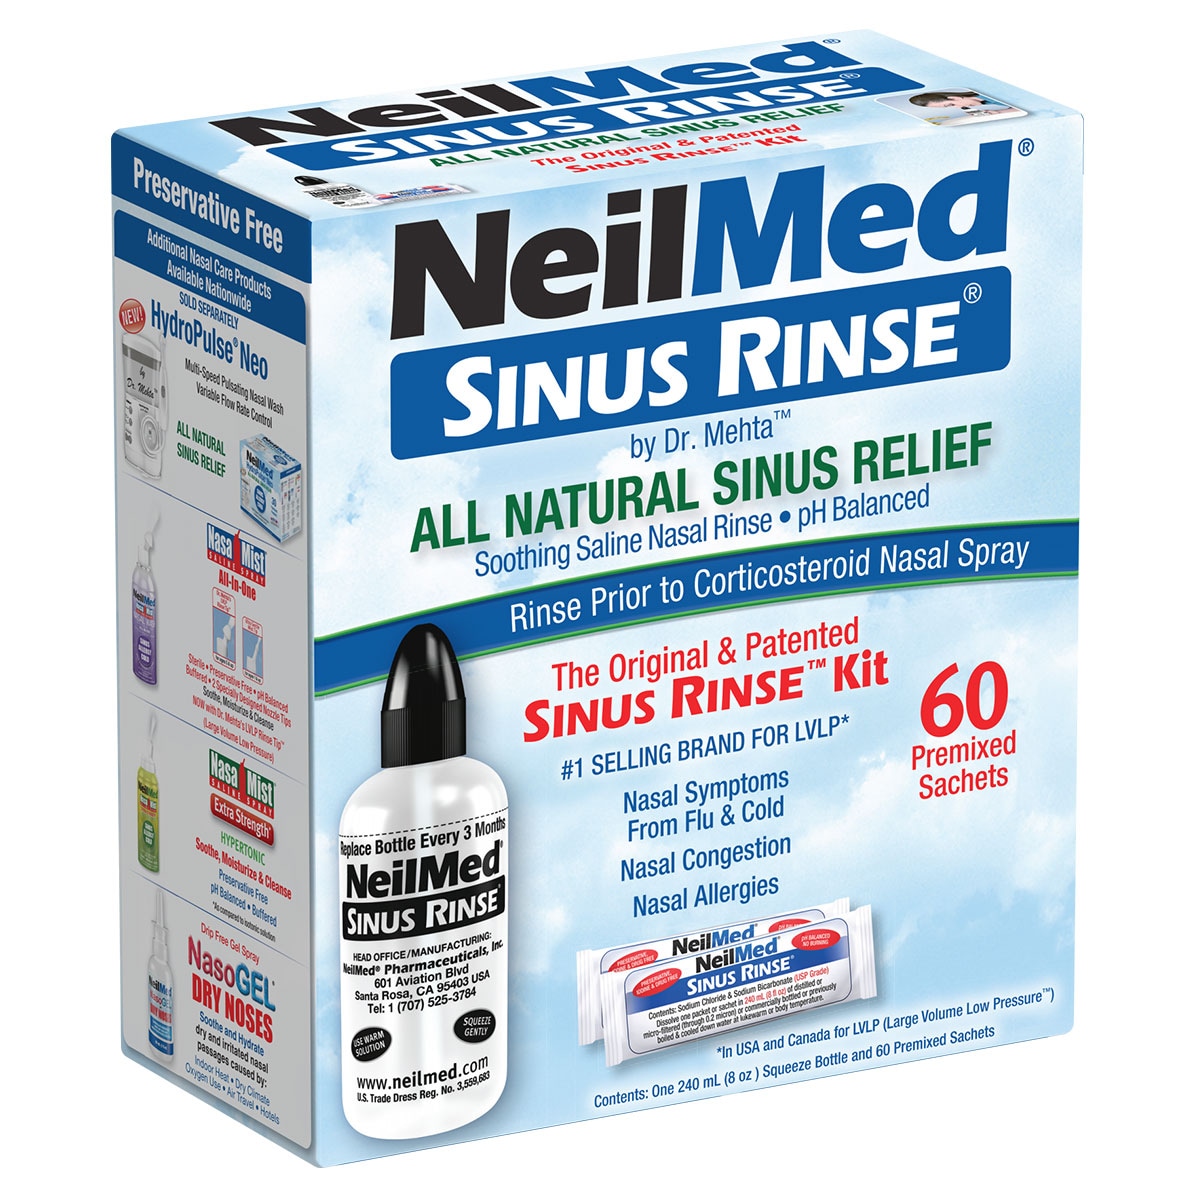 Neilmed Sinus Rinse Kit With 60 Premixed Sachets